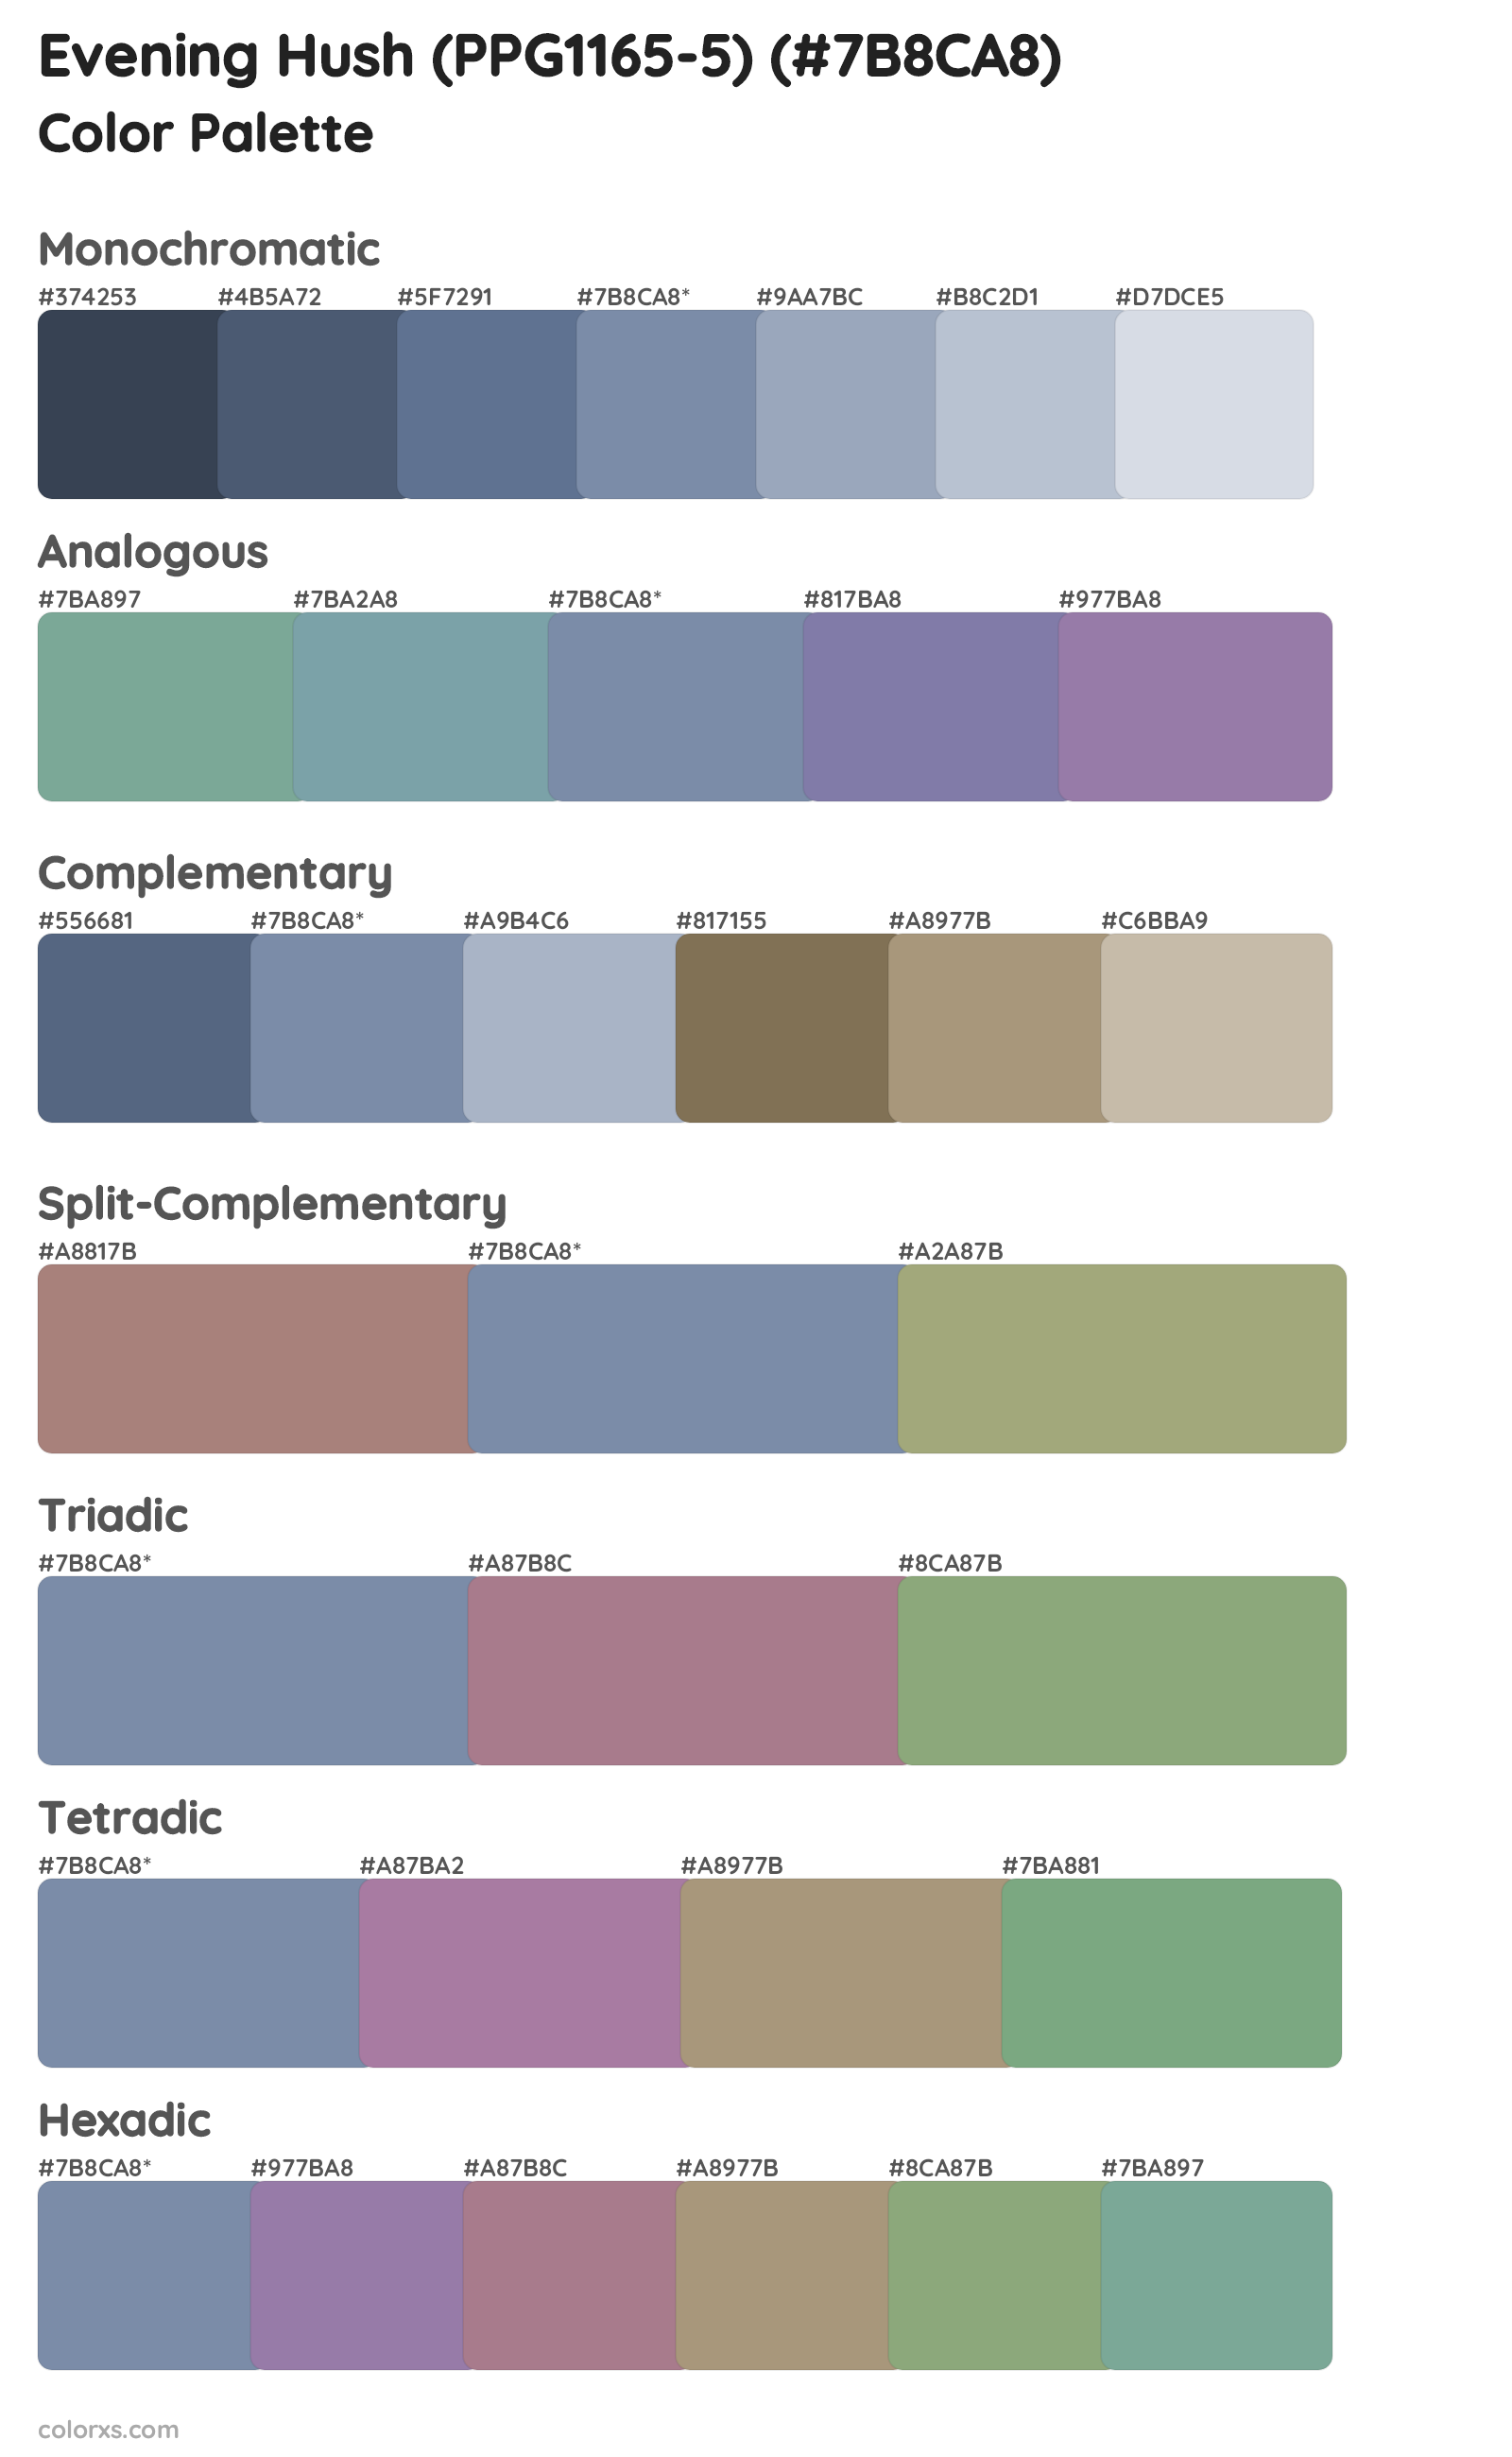 Evening Hush (PPG1165-5) Color Scheme Palettes